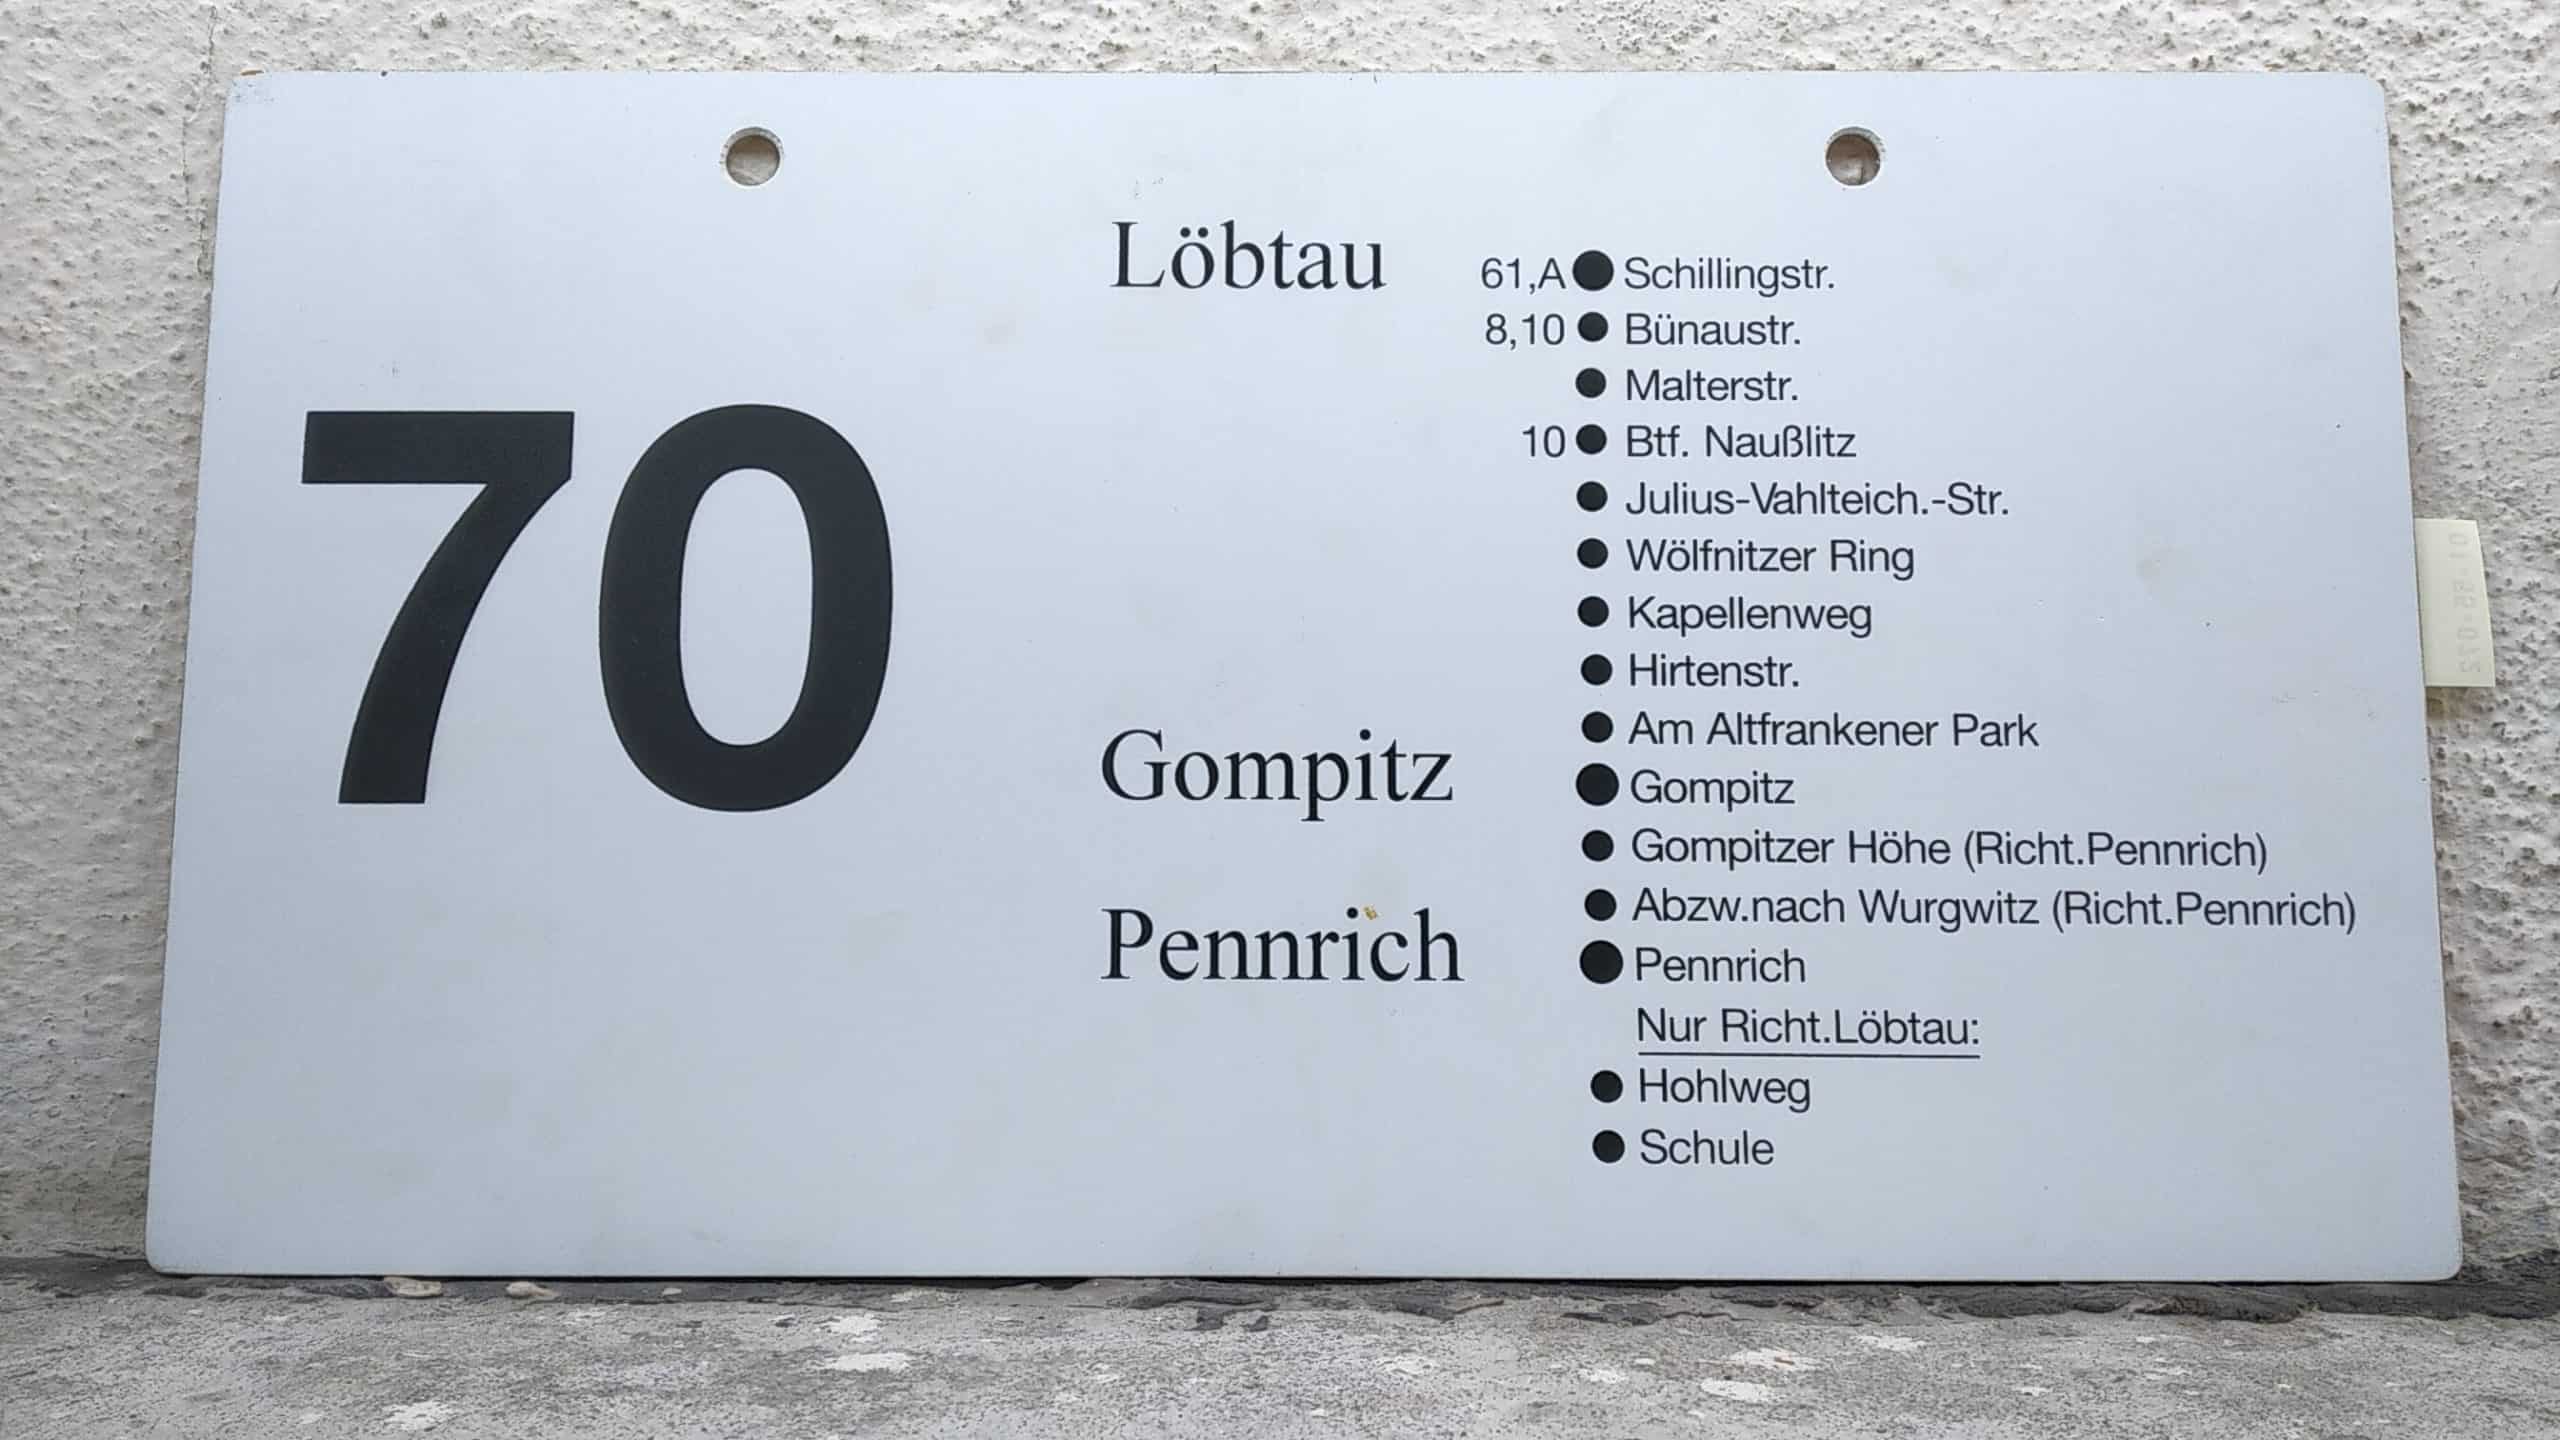 Ein seltenes Bus-Linienschild aus Dresden der Linie 70 von Löbtau (Schillingstr.) nach Gompitz (Pennrich) #2